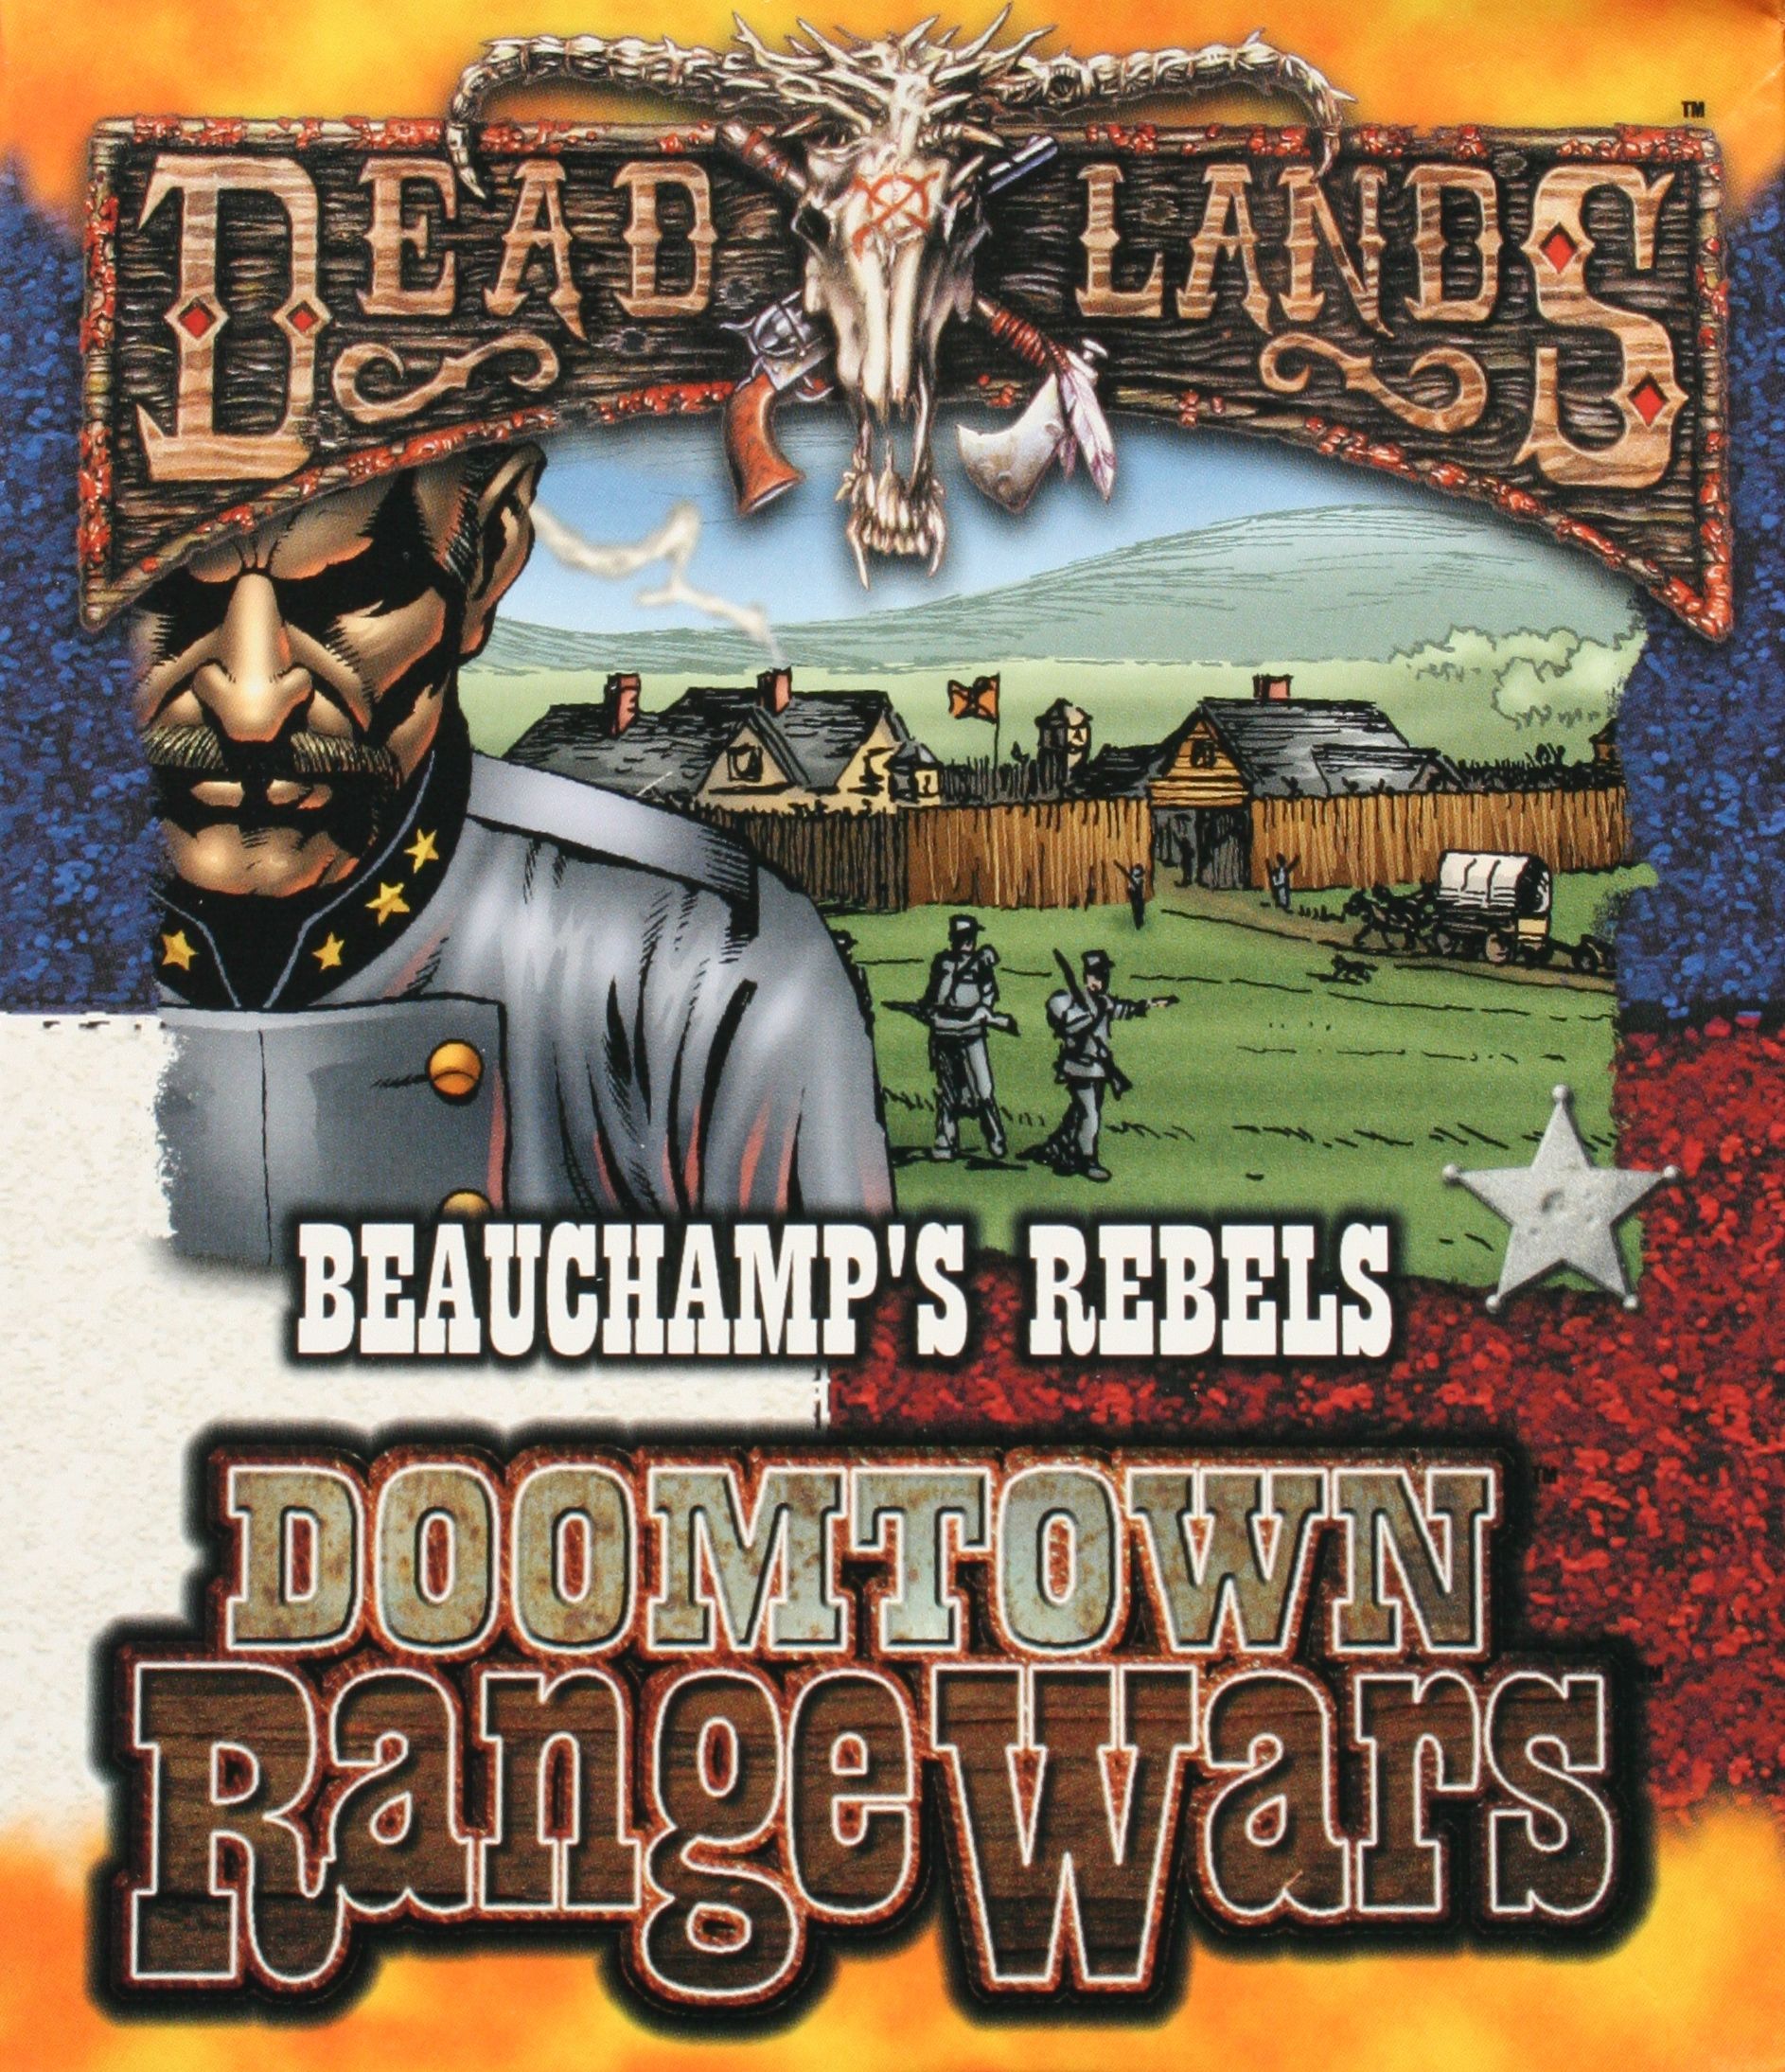 Deadlands: Doomtown Range Wars